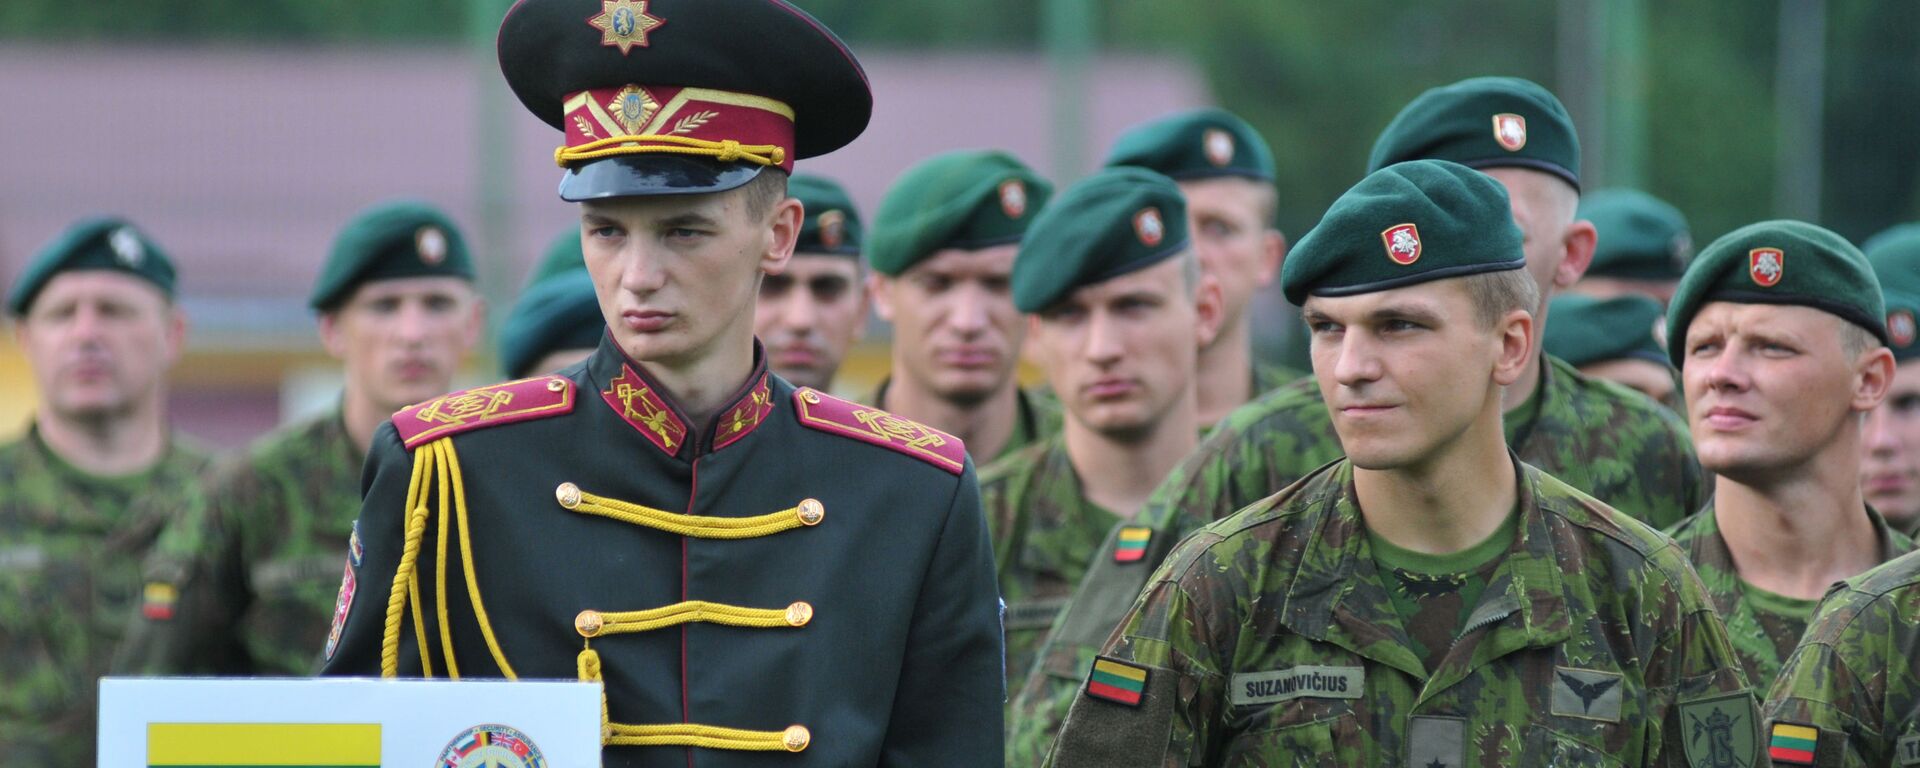 Литовские военнослужащие на церемонии открытия международных военных учений Rapid Trident 2015 в Украине  - Sputnik Latvija, 1920, 24.12.2021